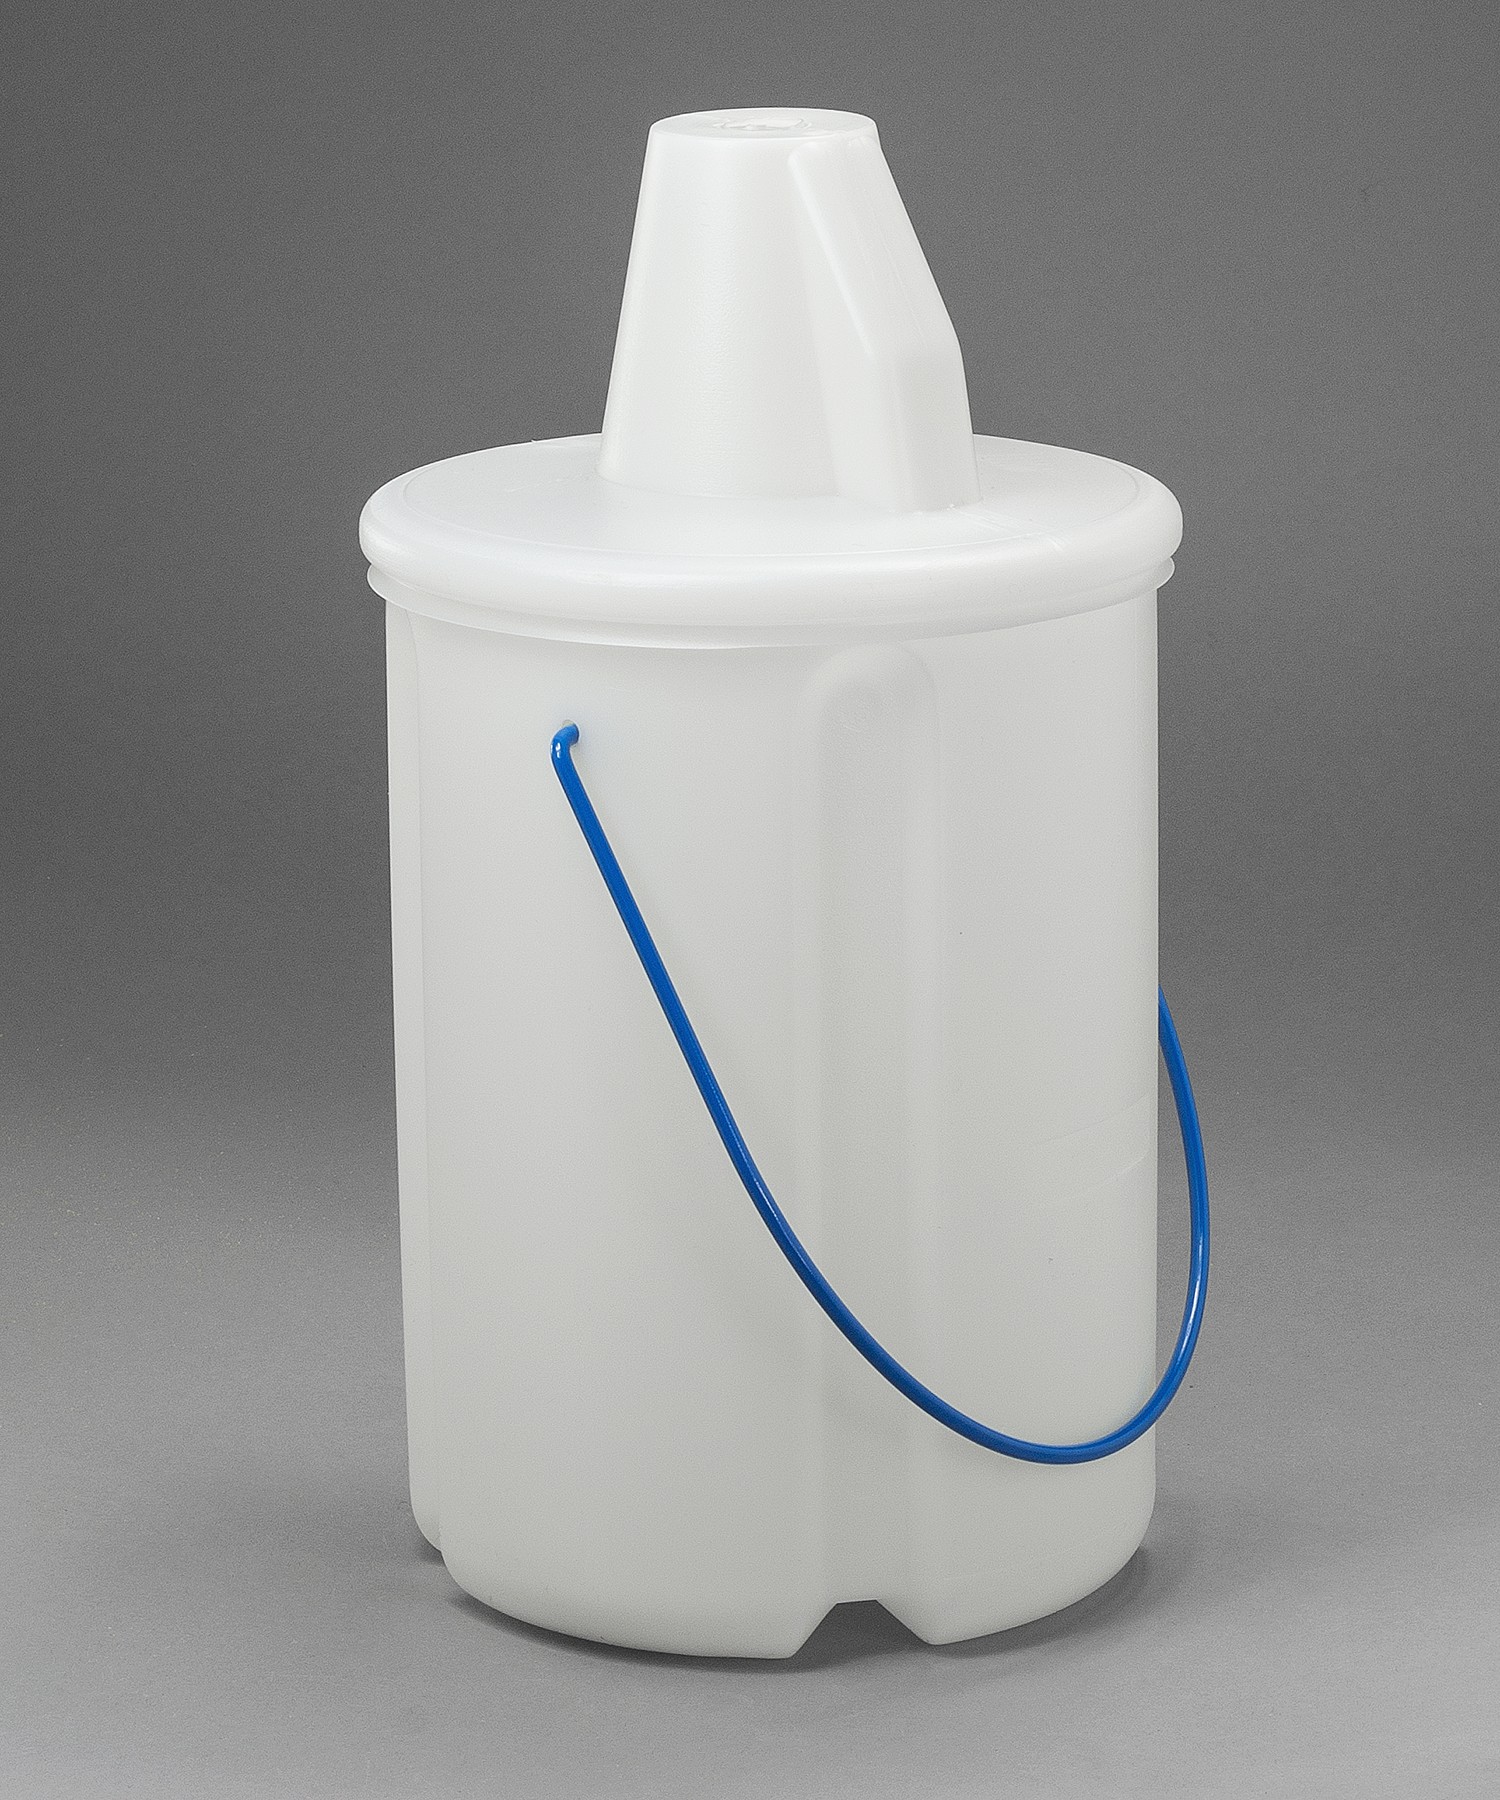 SP Bel-Art Cone Style Acid/Solvent Bottle Carrier; Holds One 4 Liter (1 Gallon) Bottle, Polyethylene